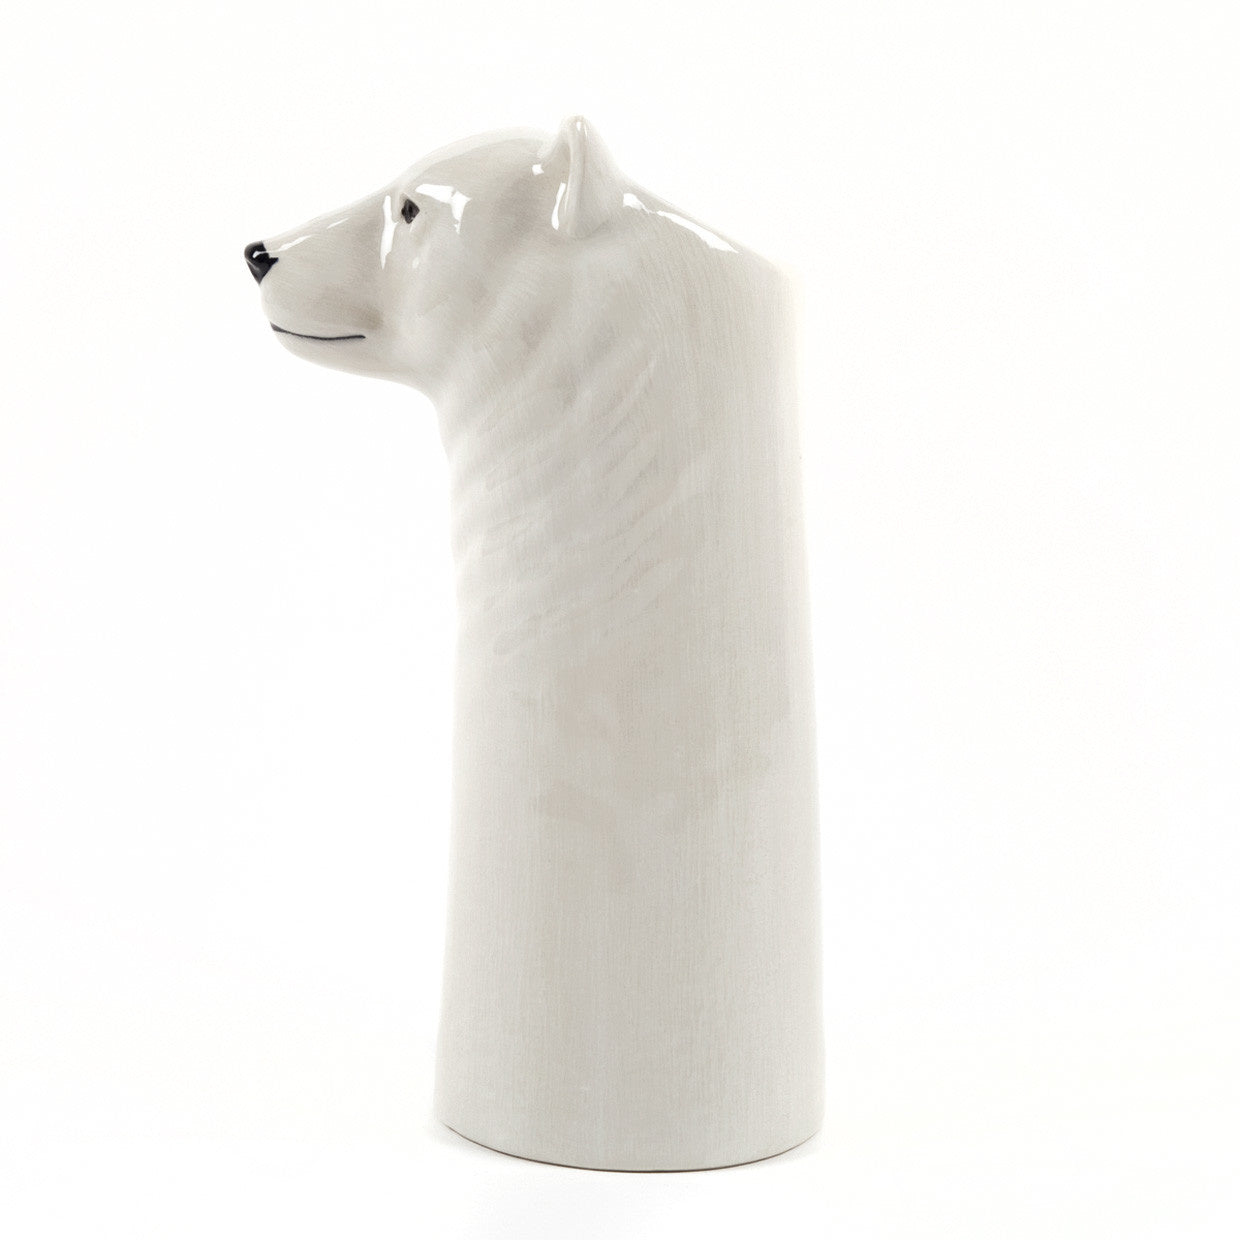 Polar bear table vase M_01